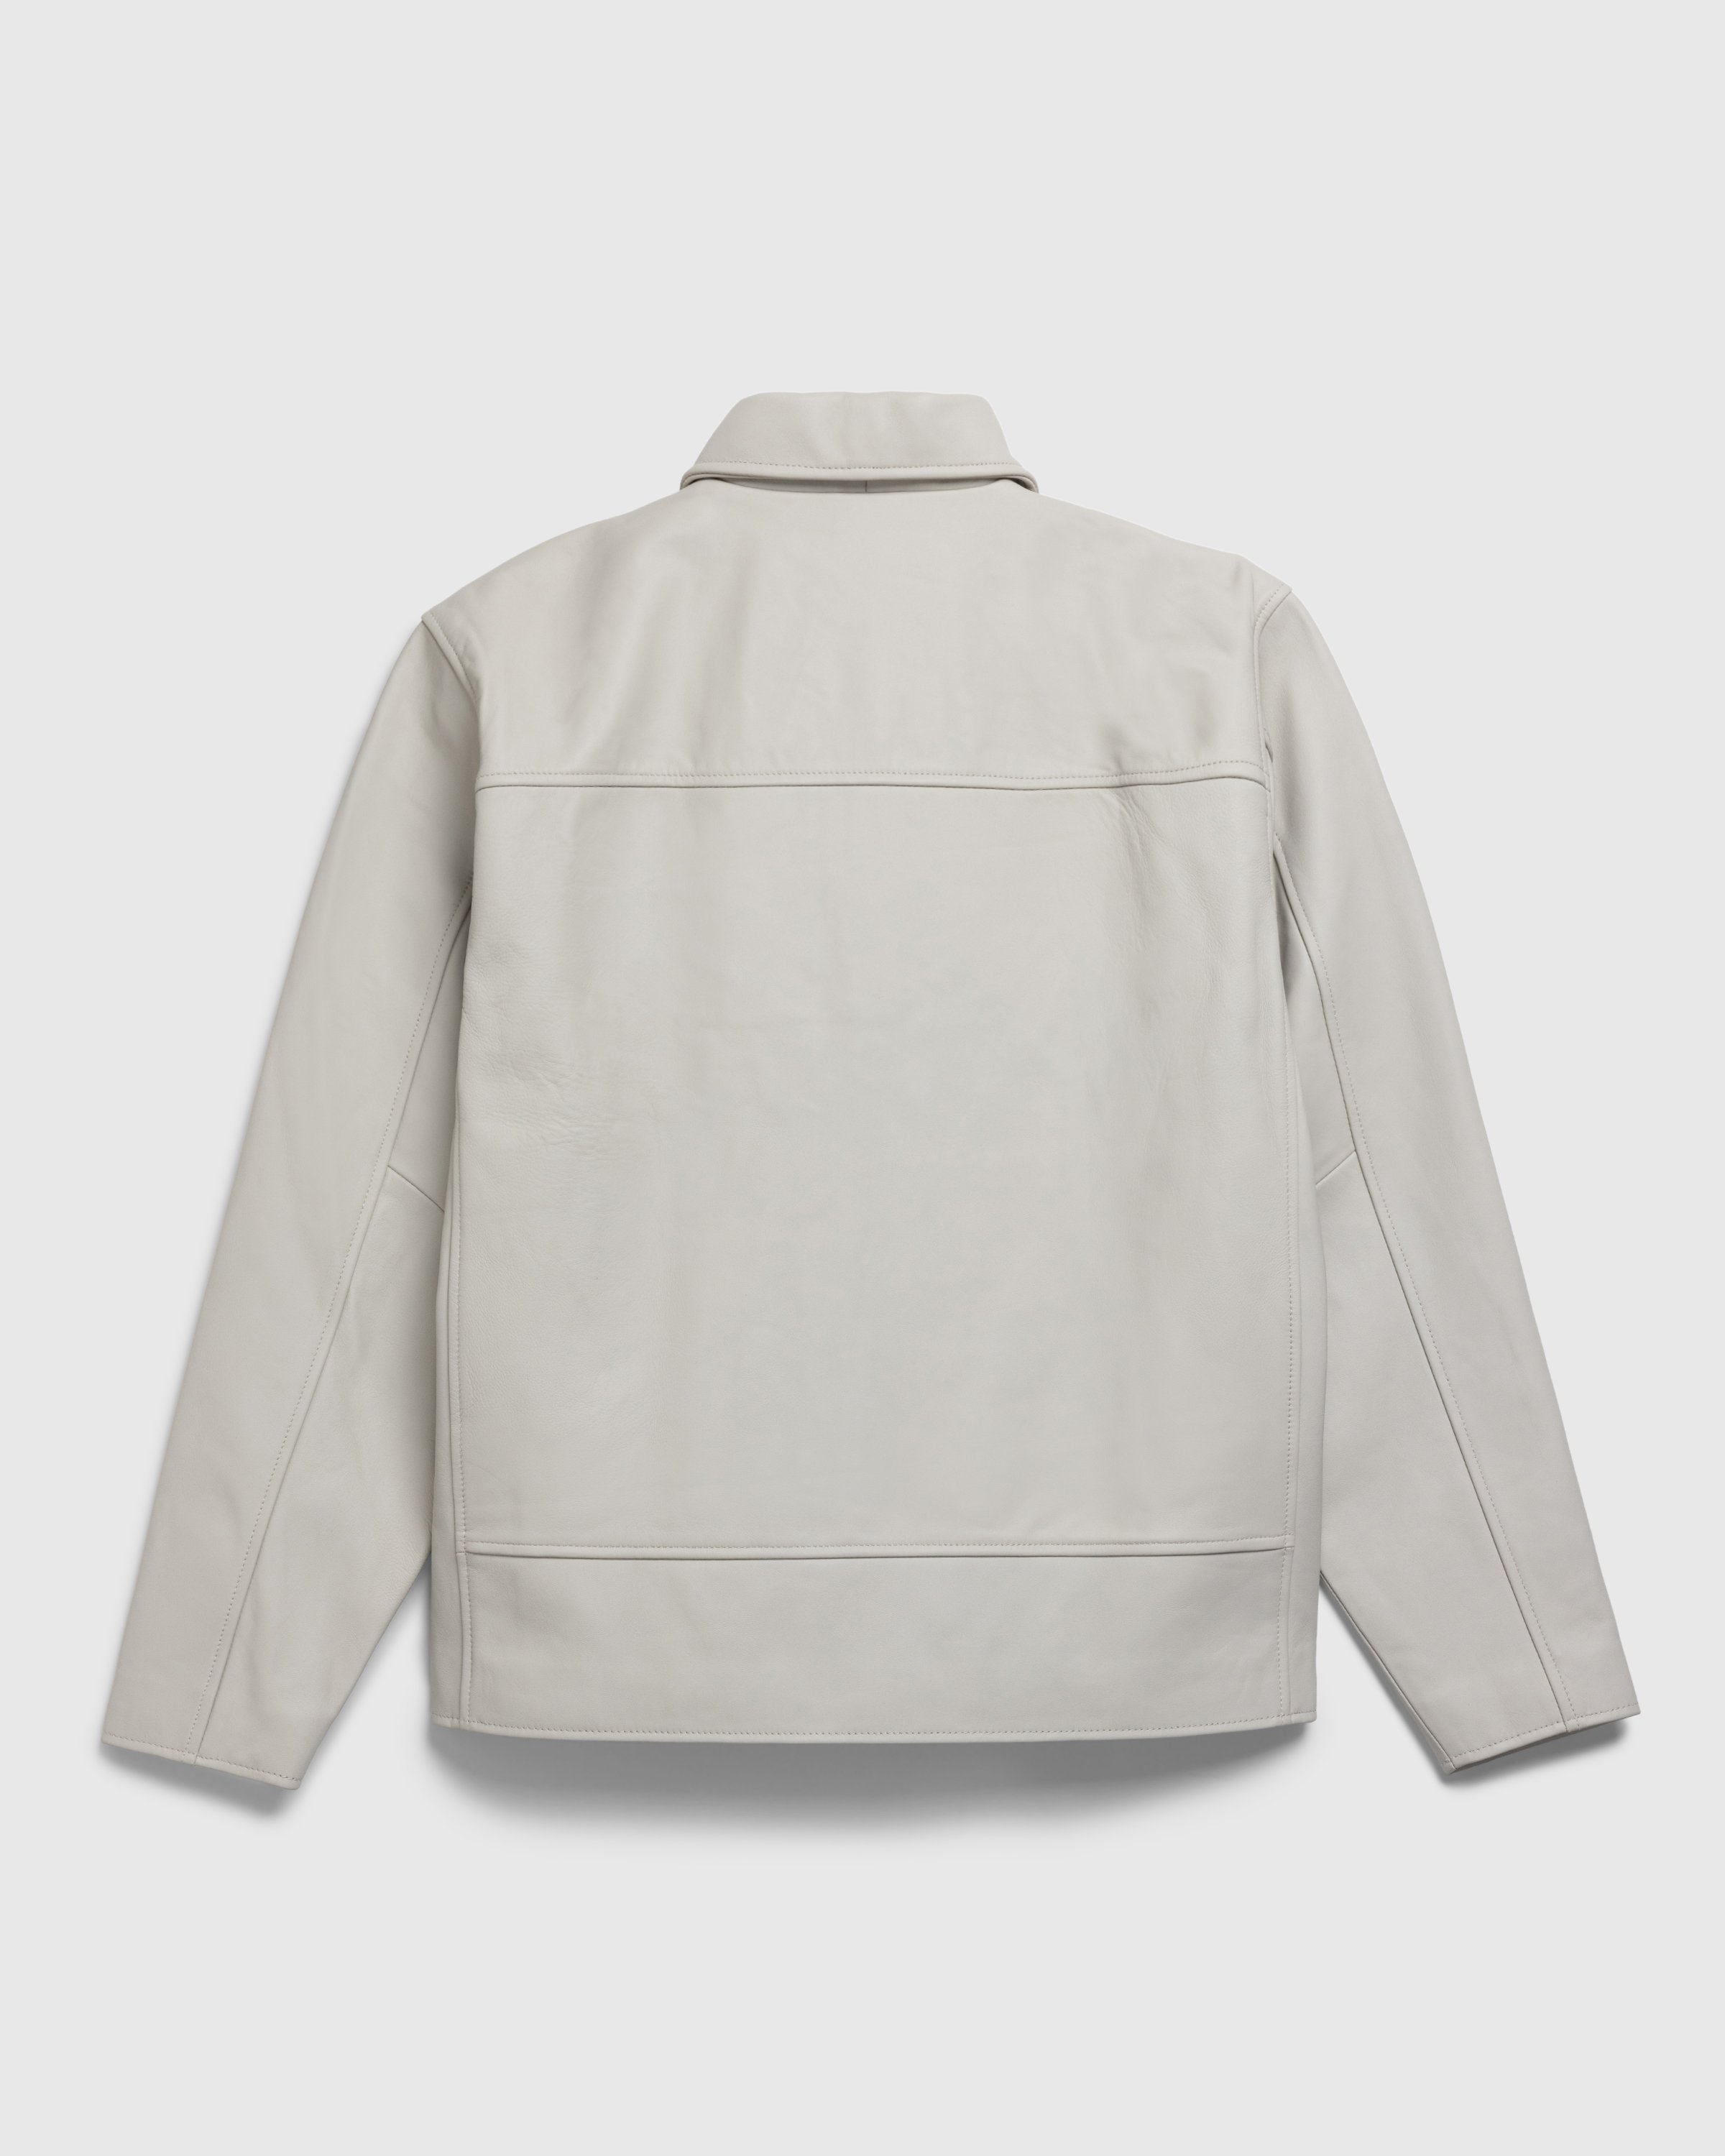 Highsnobiety HS05 - Leather Jacket - Clothing - Light Grey - Image 2